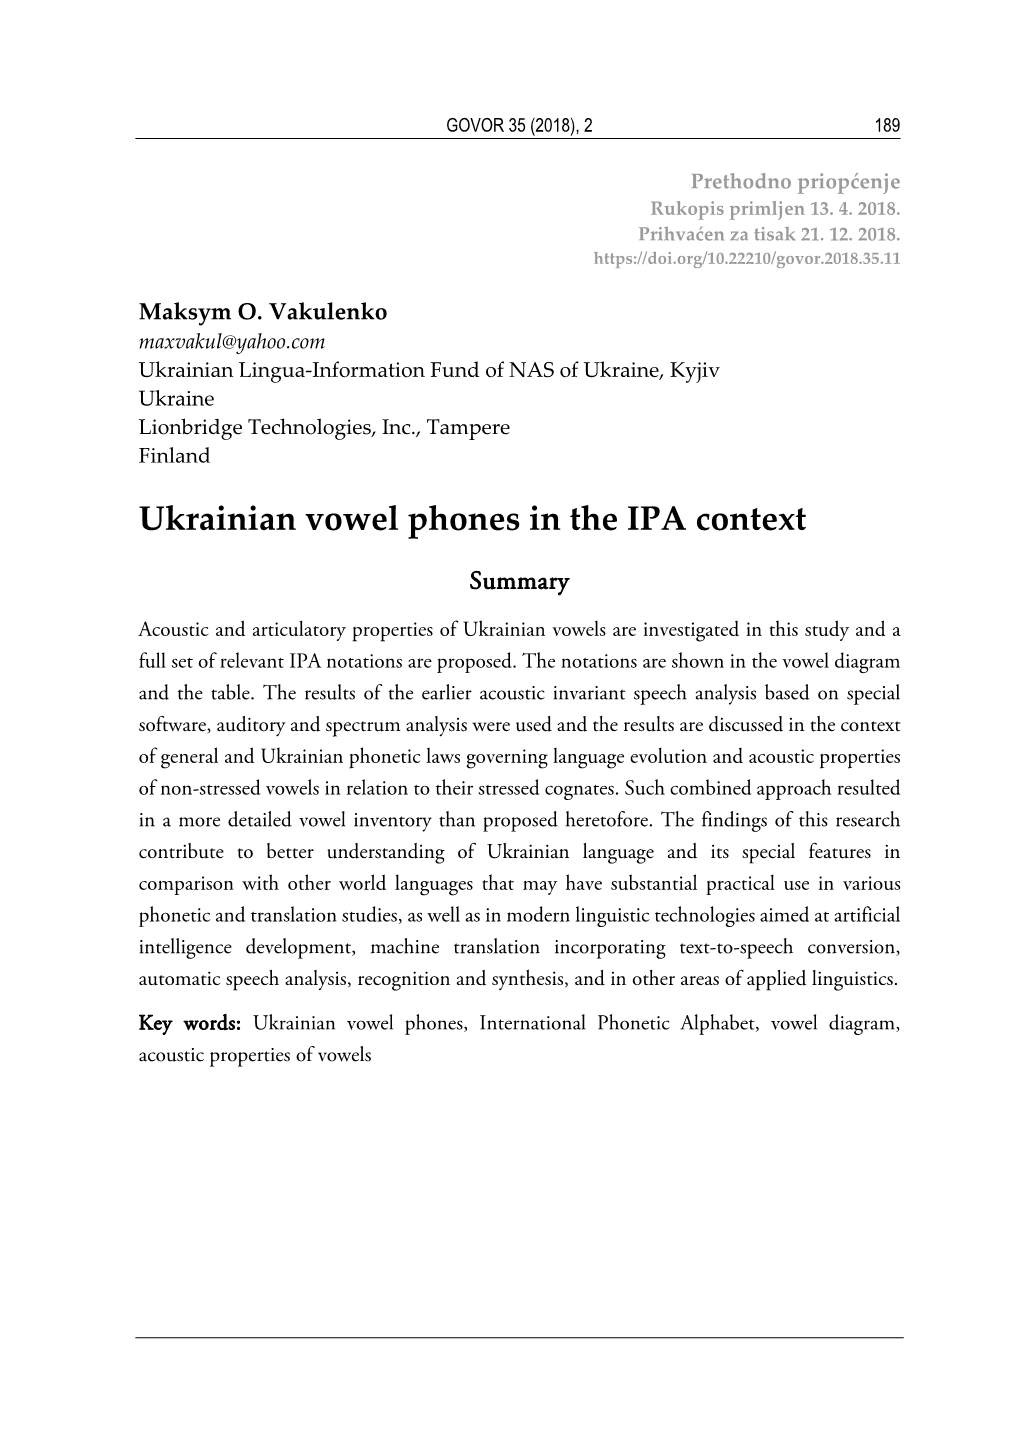 Ukrainian Vowel Phones in the IPA Context